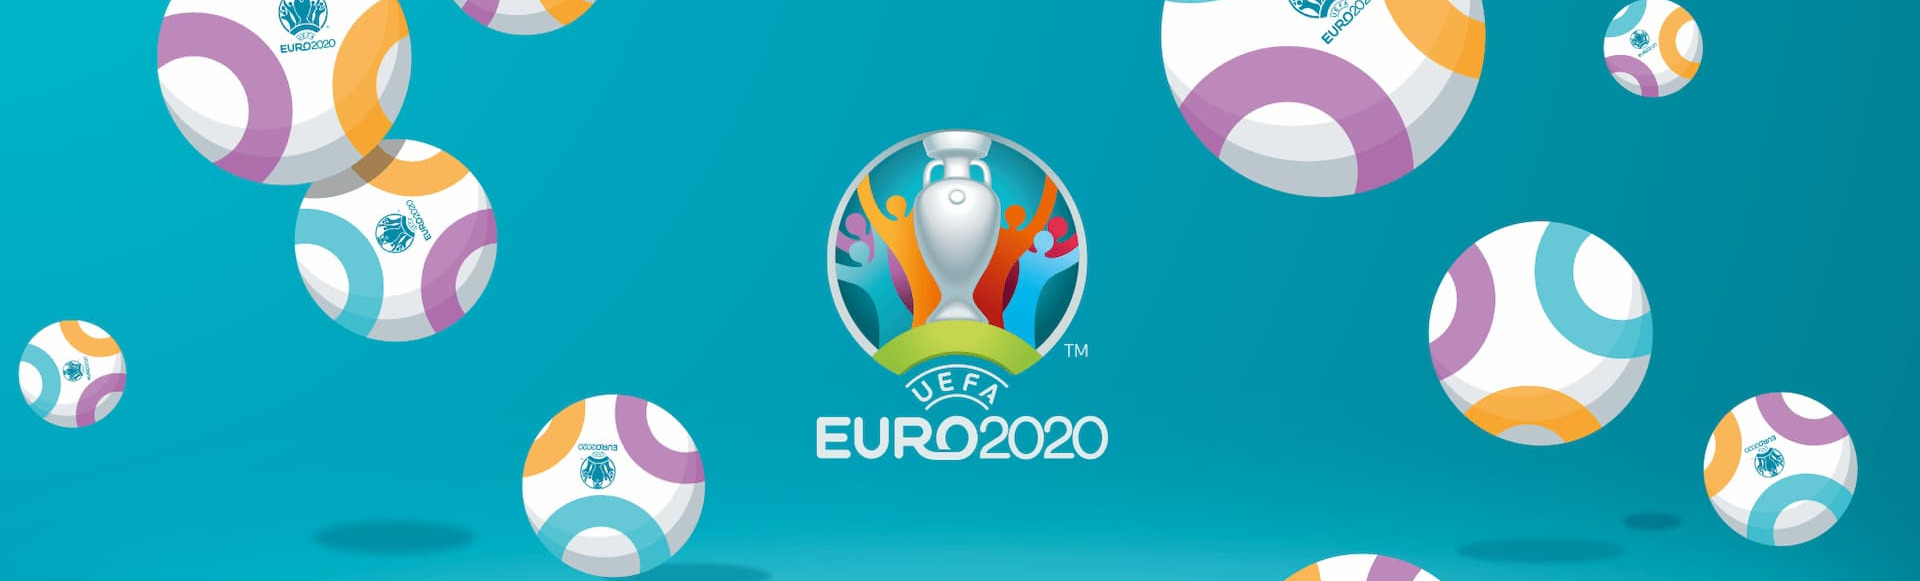 Результаты жеребьевки ЕВРО 2020. Билеты на матчи уже в продаже!